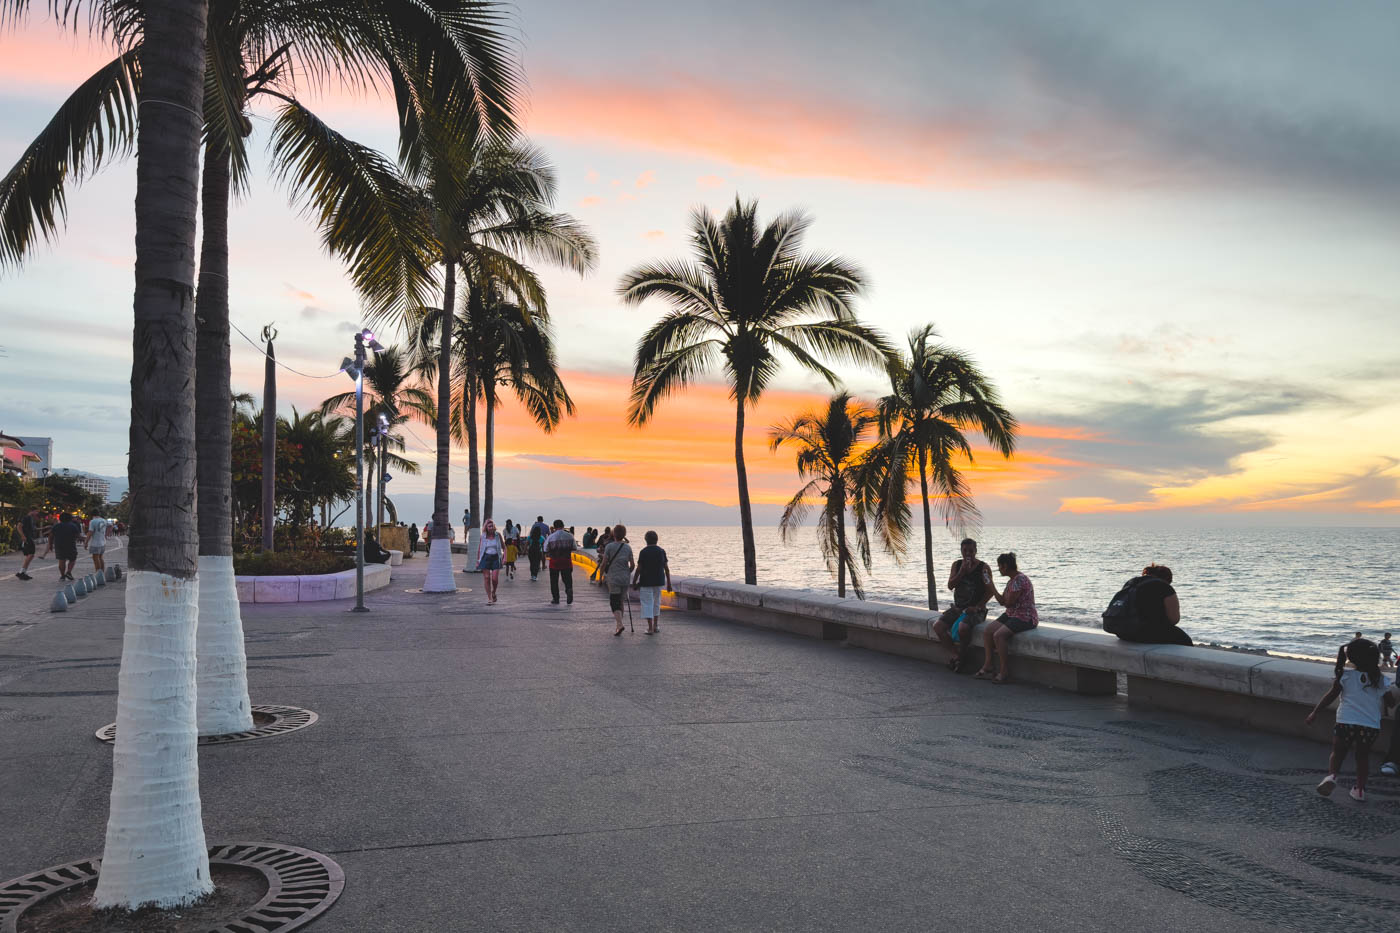 Tourists sitting beside the ocean at sunset along Puerto Vallarta malecon.